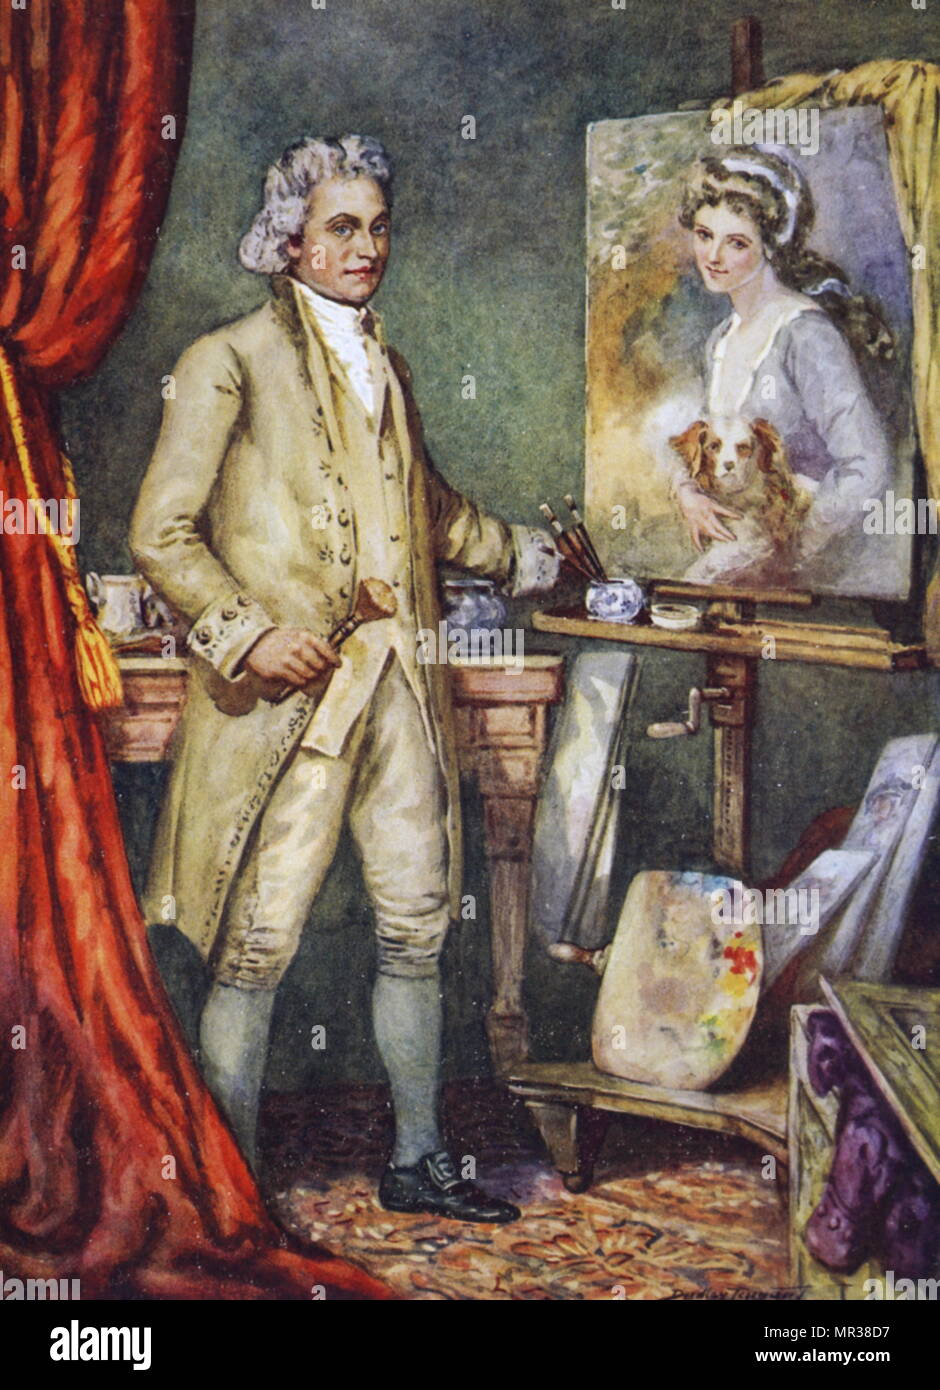 Gemälde der Darstellung George Romney Malerei ein Porträt der Lady Hamilton. George Romney (1734-1802) ein englischer Portrait Maler. Vom 18. Jahrhundert Stockfoto